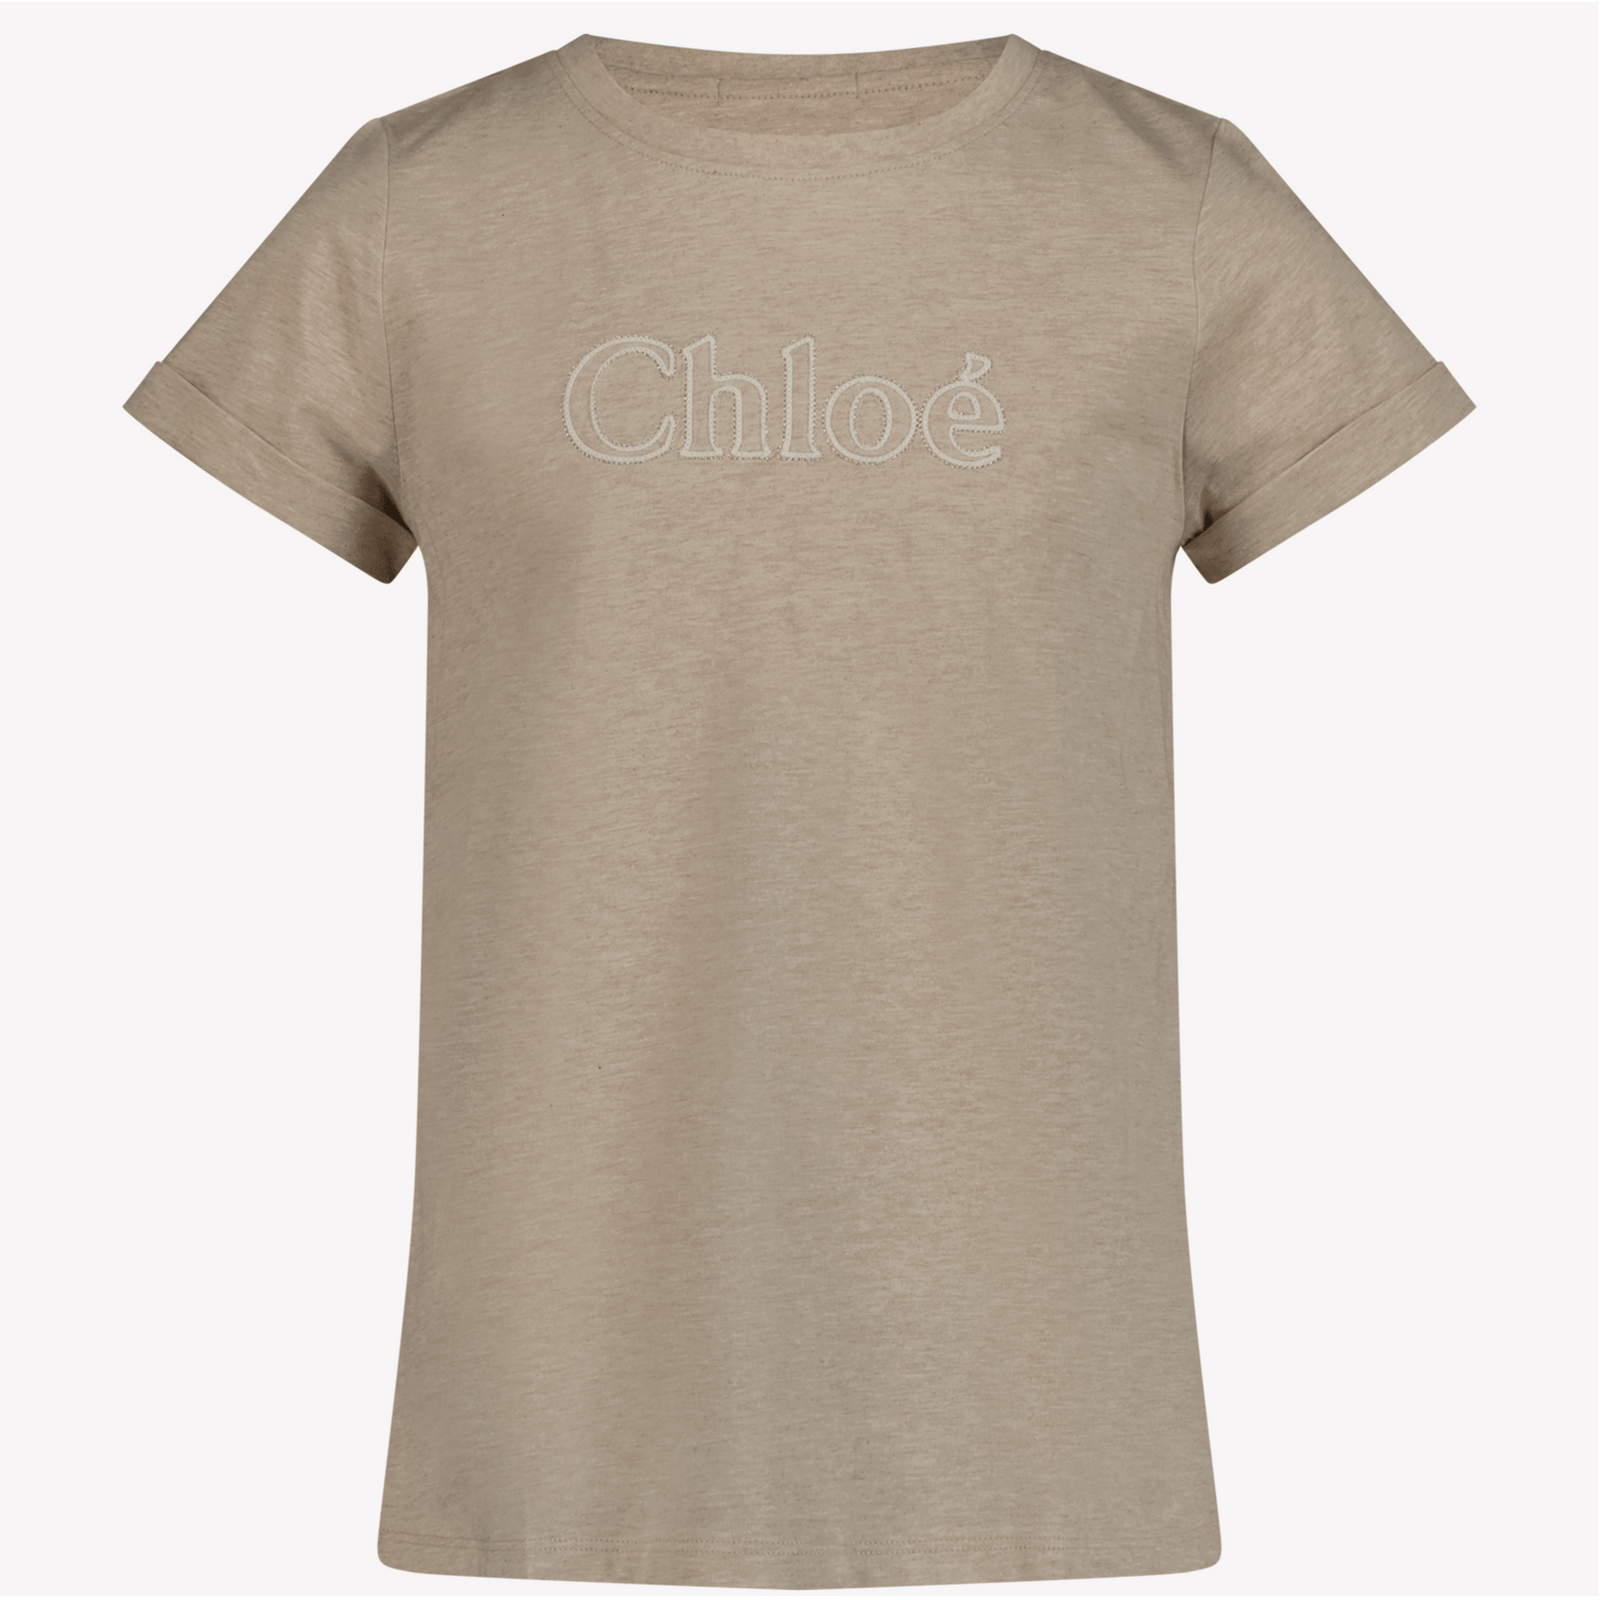 Chloe Kinder Meisjes T-Shirt Beige 4Y